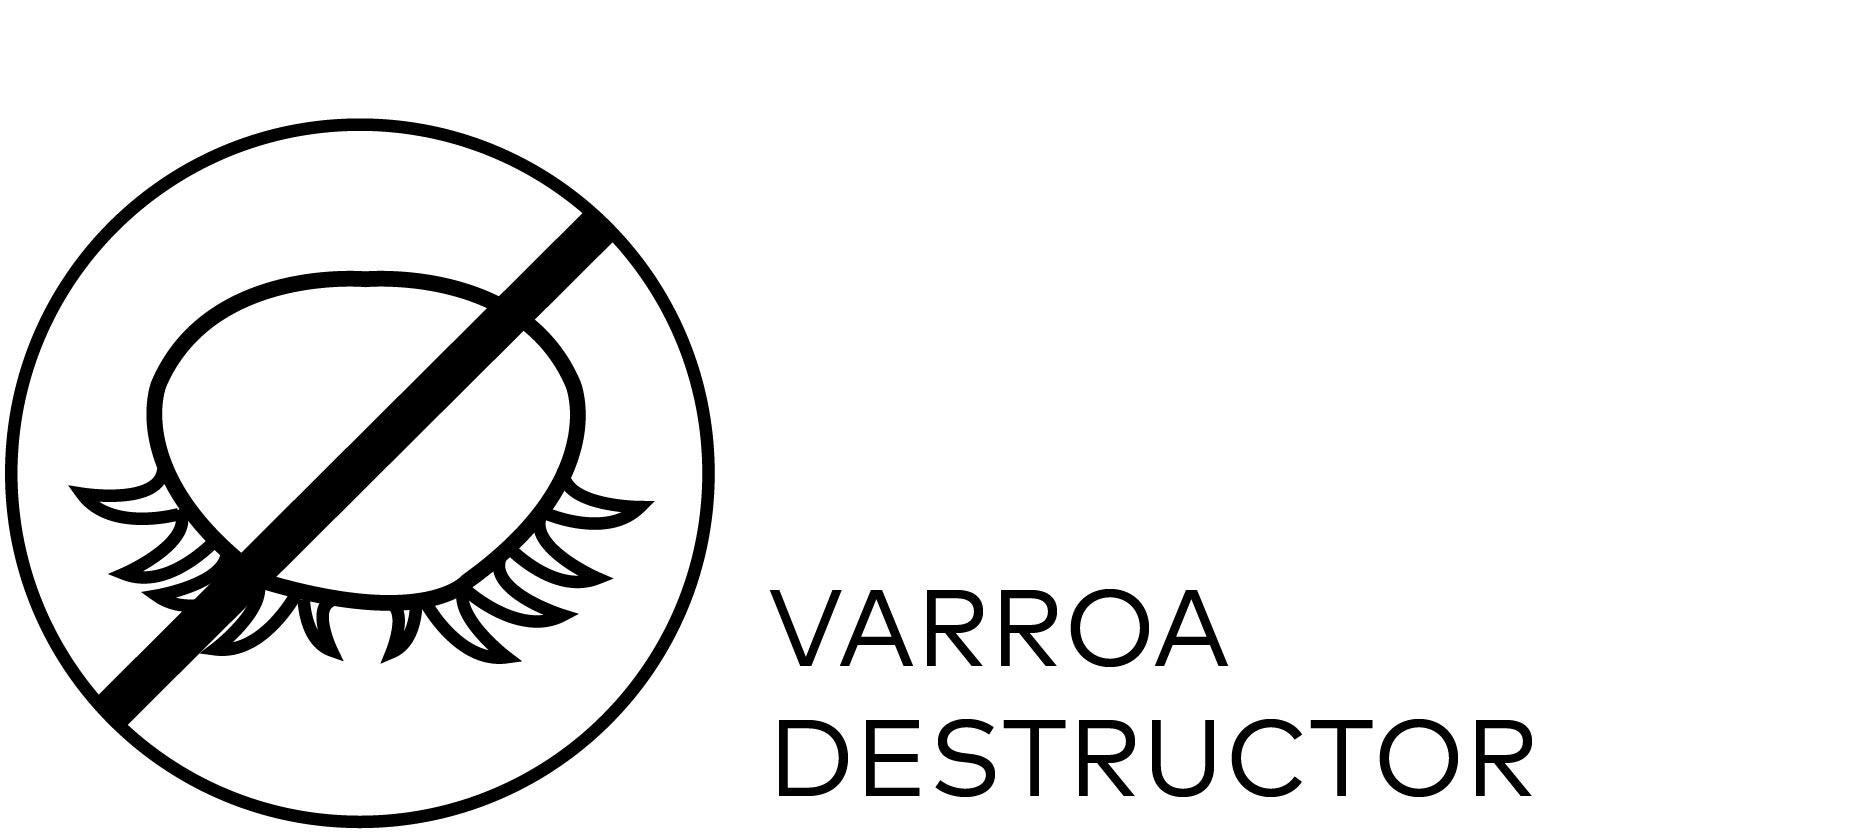 Varroa distructor